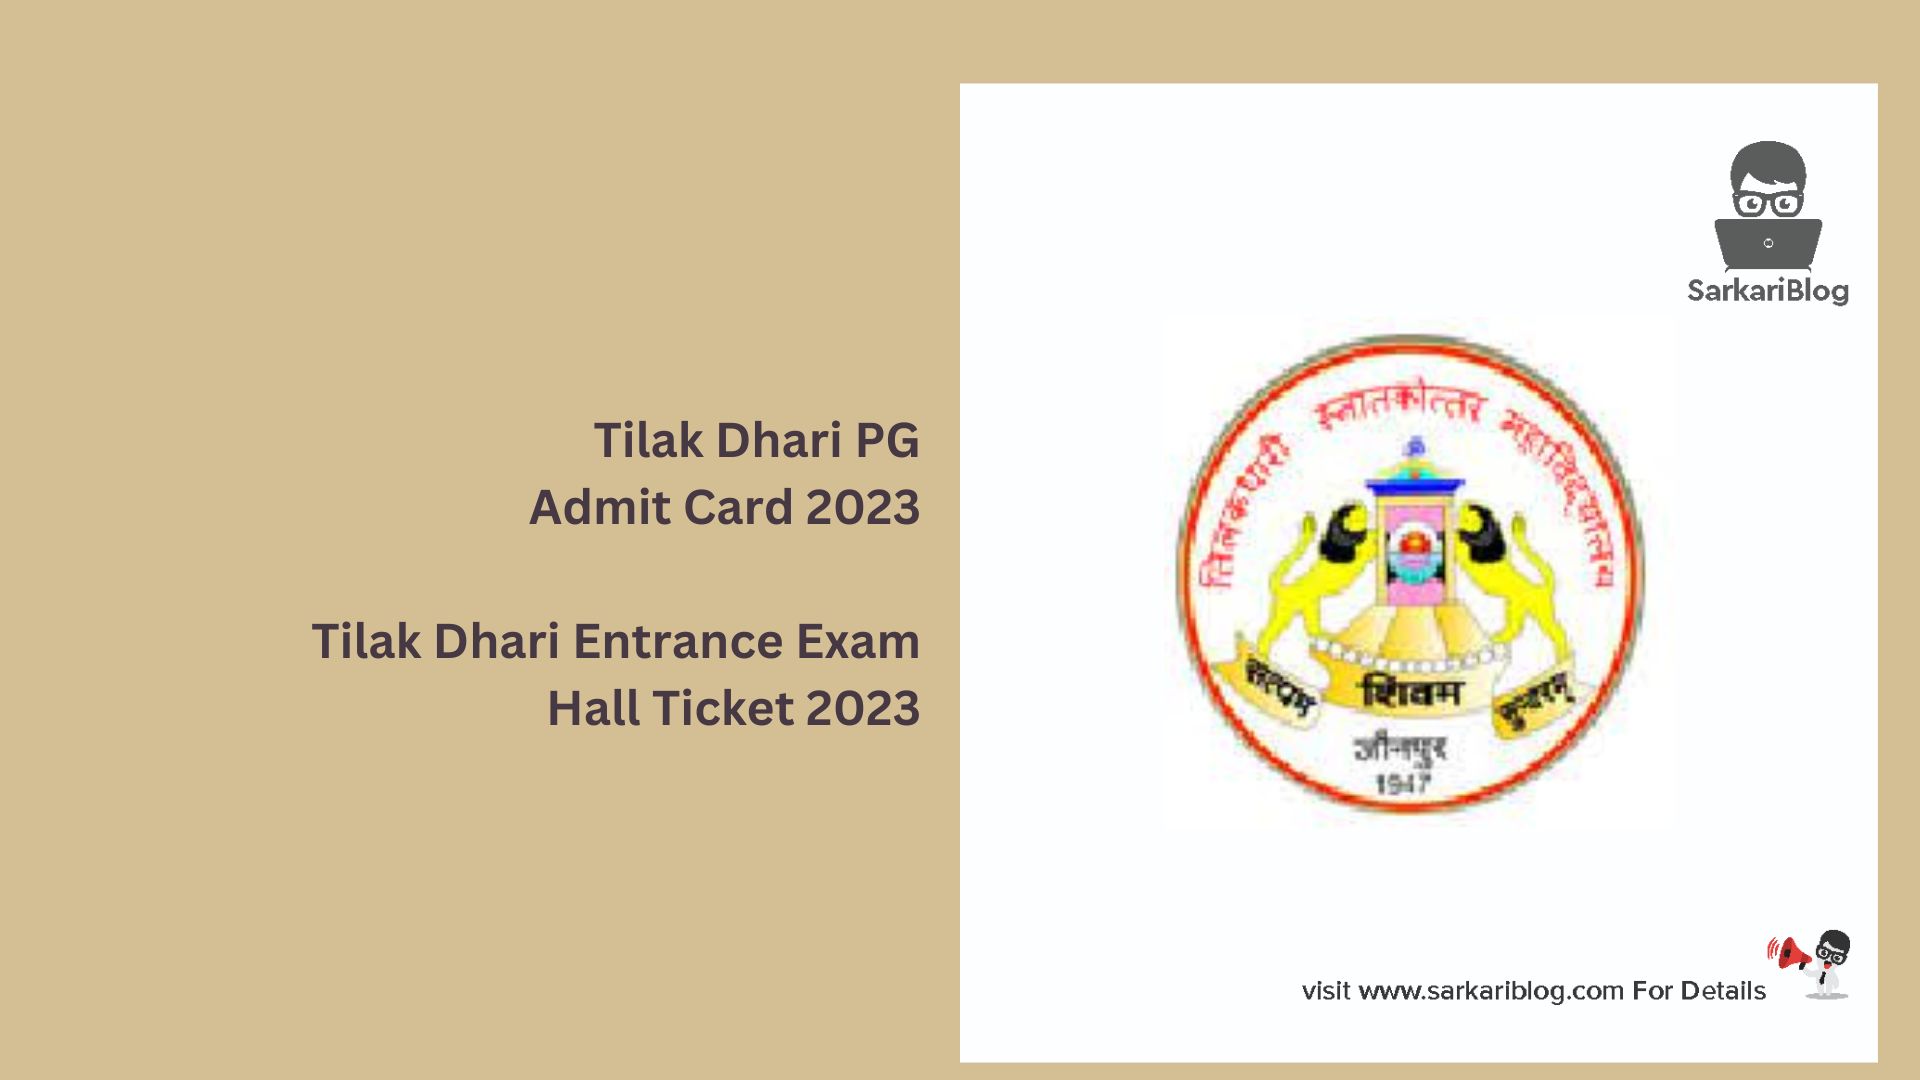 Tilak Dhari PG Admit Card 2023